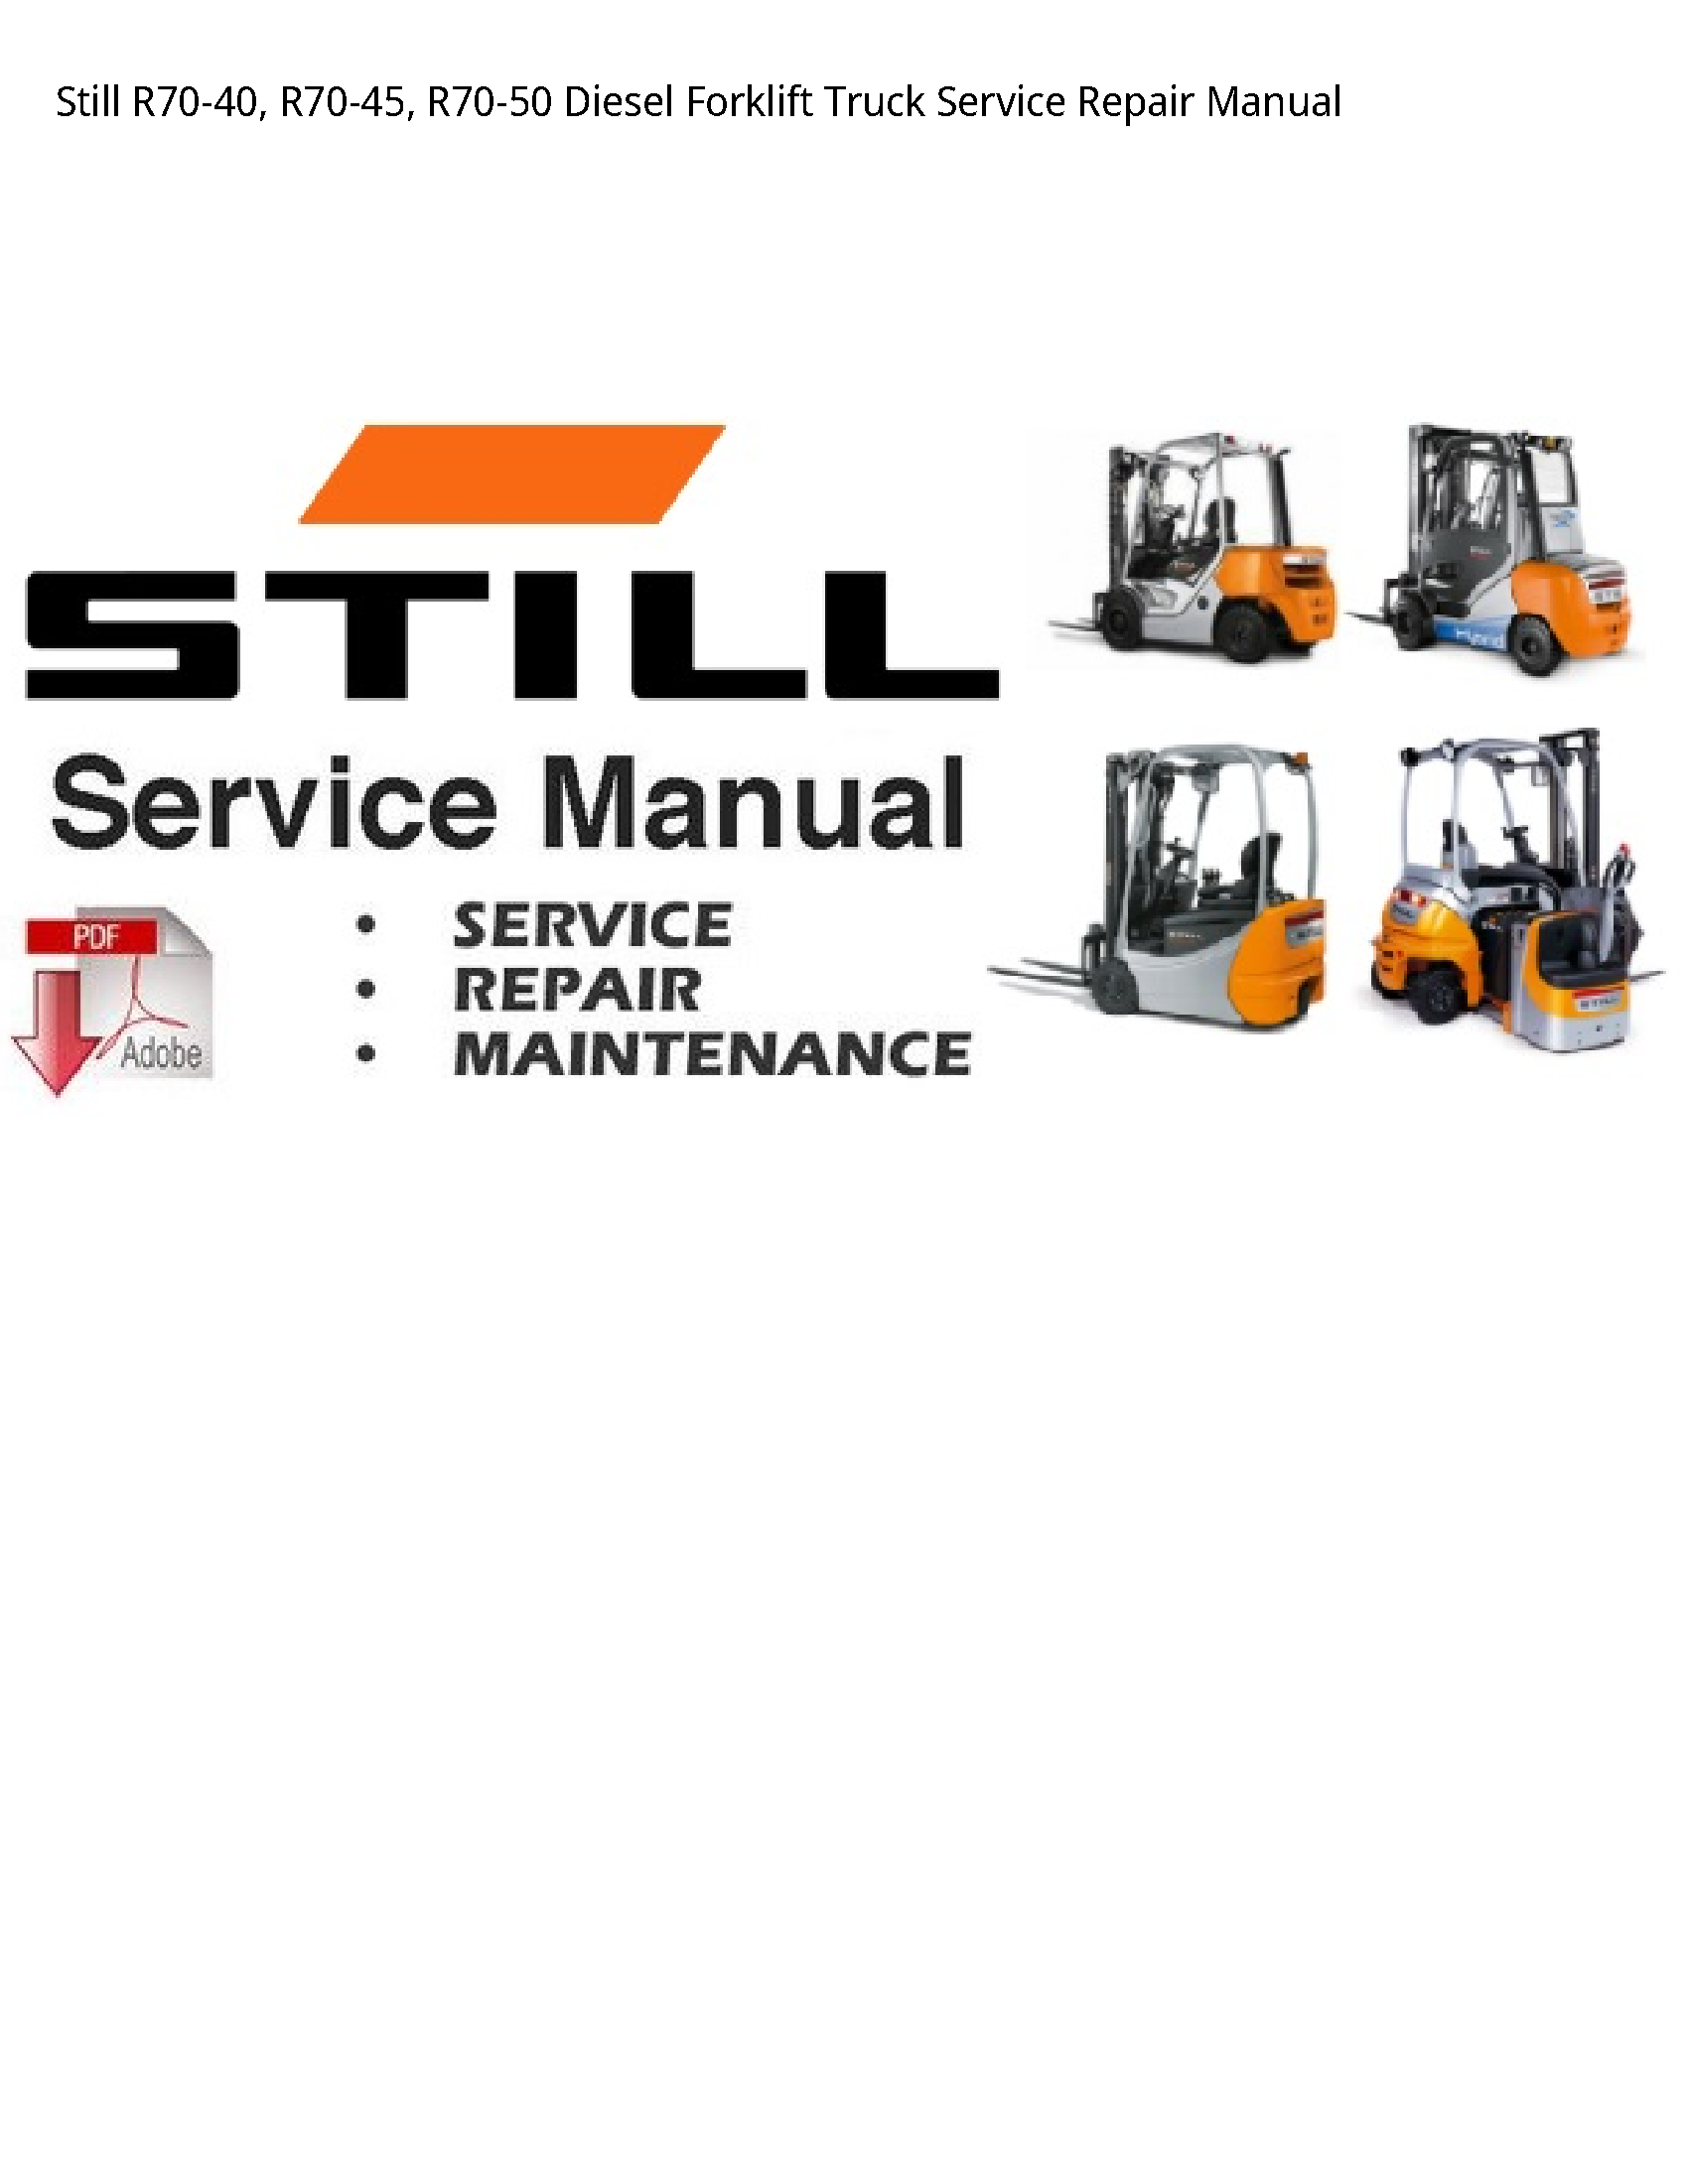 Still R70-40 Diesel Forklift Truck manual